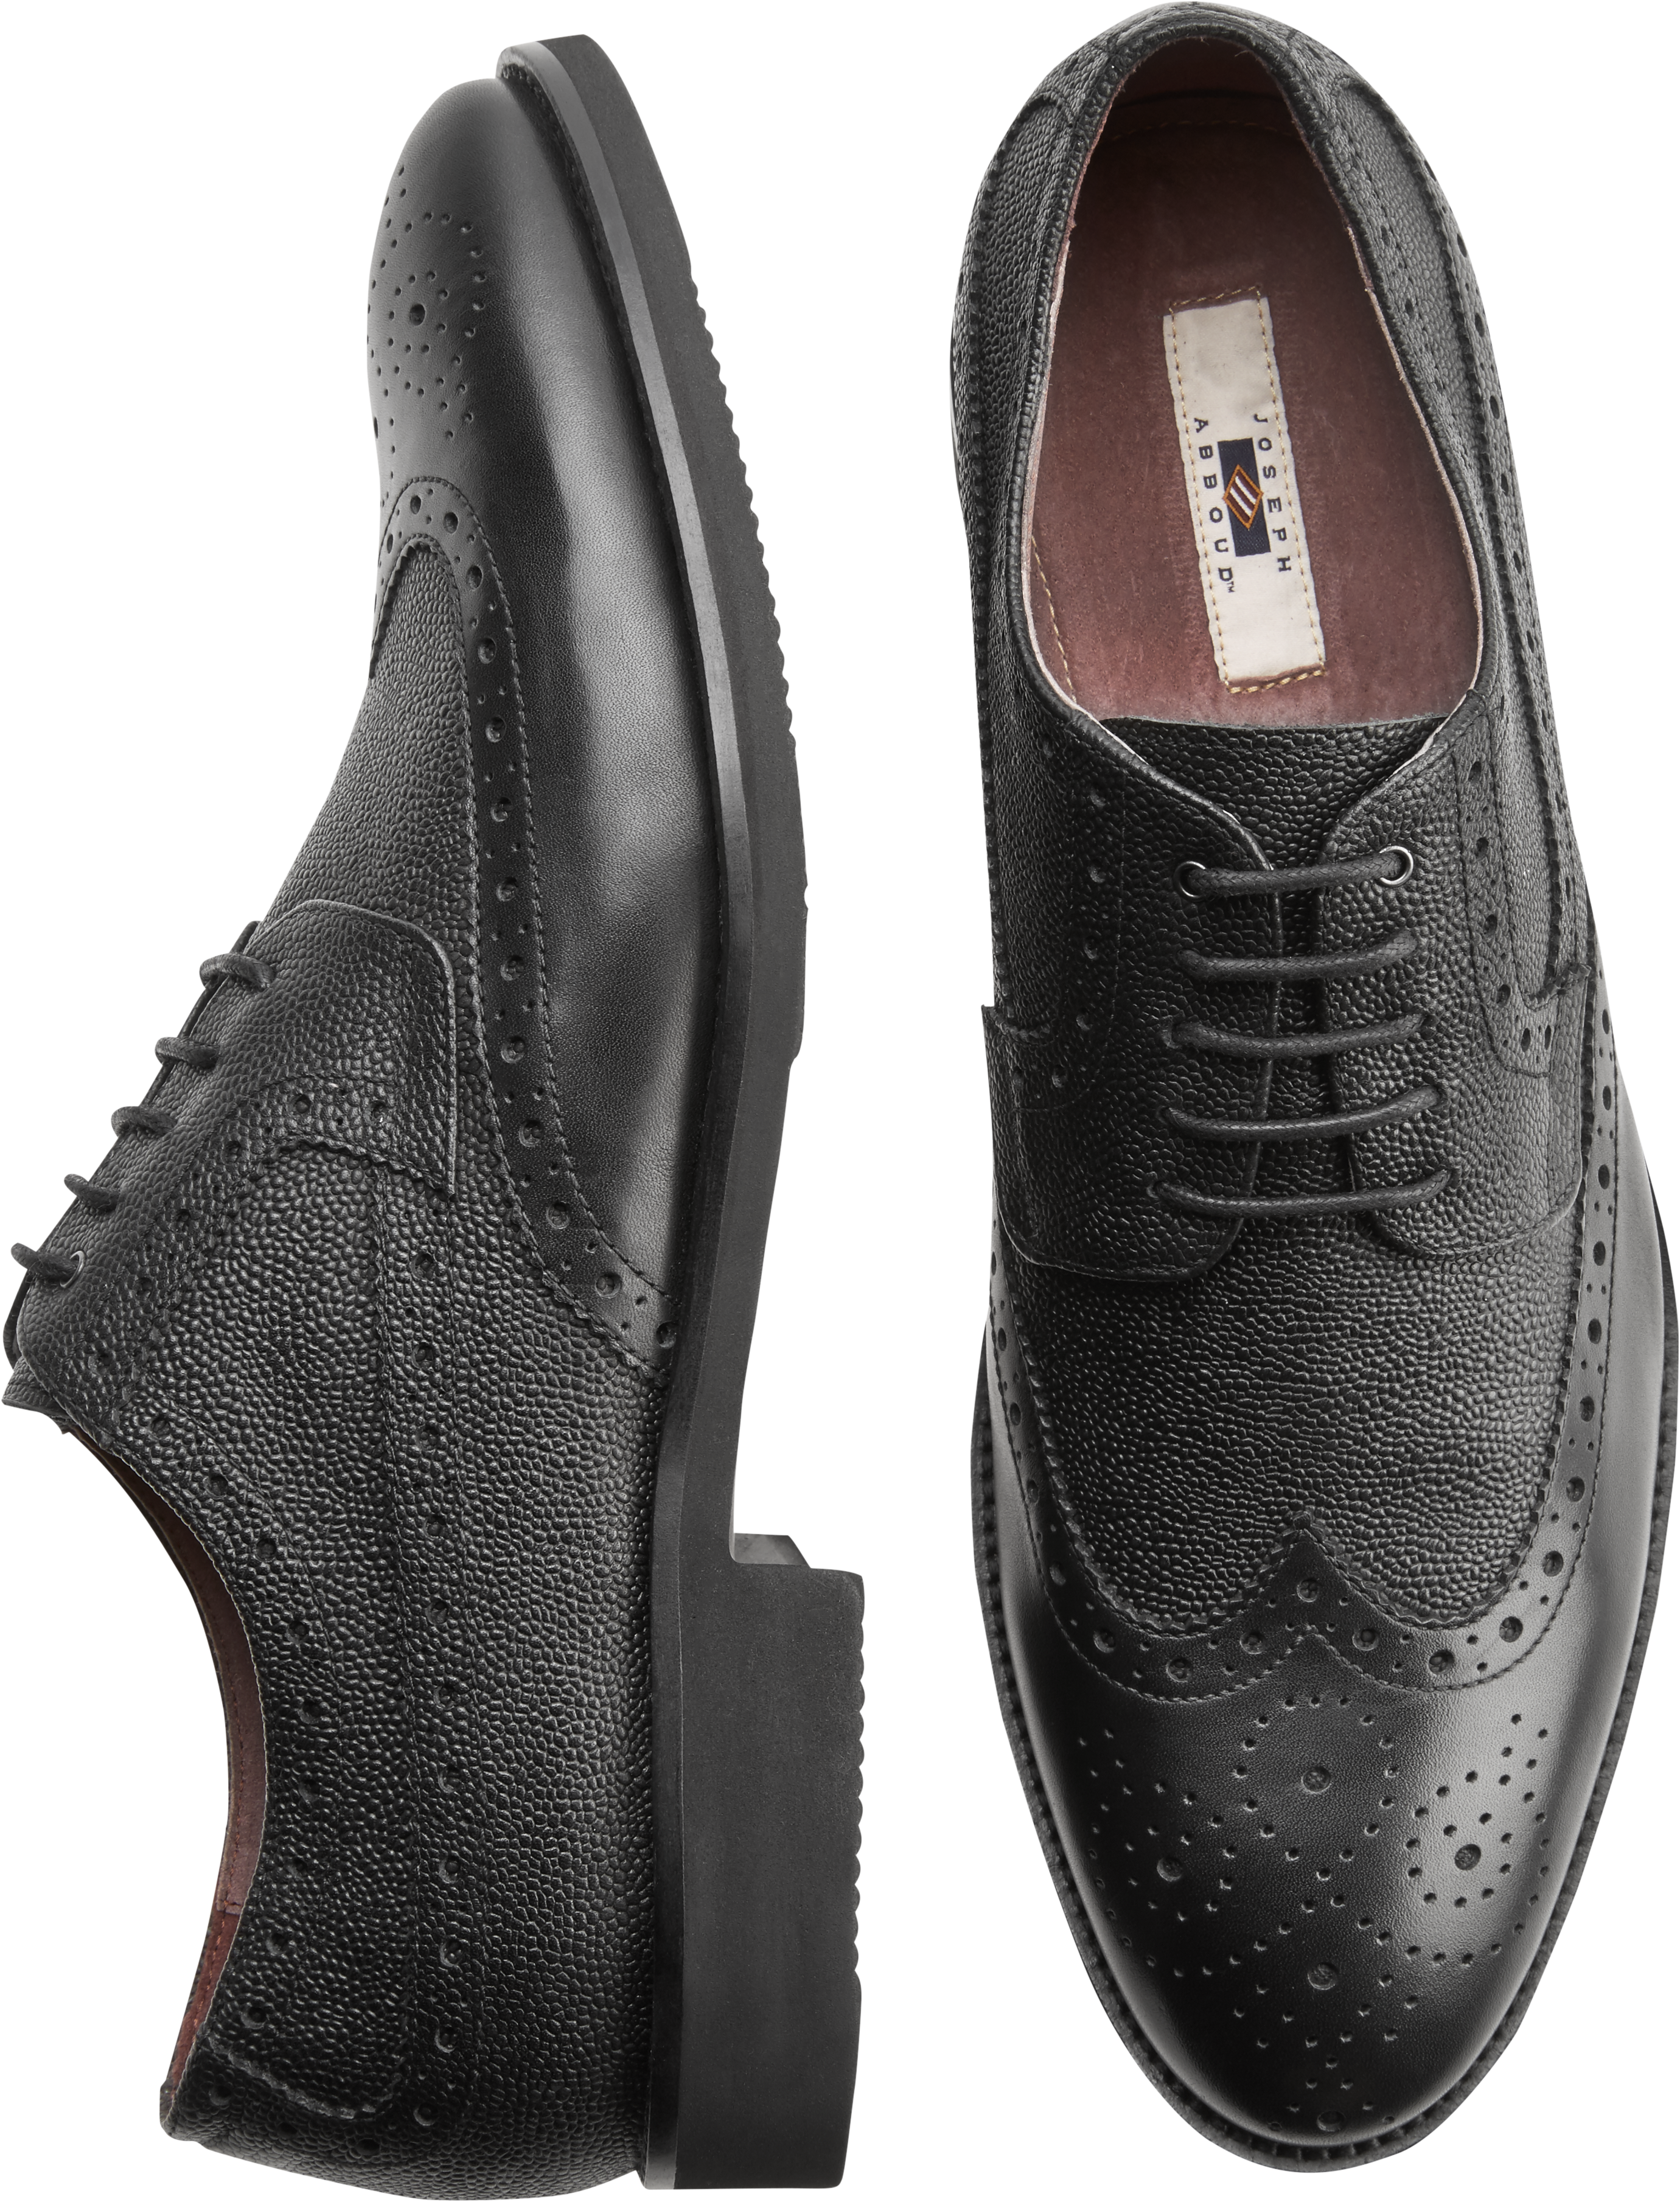 Joseph Abboud Snyder Black Wingtip Oxfords - Men's Shoes | Men's Wearhouse